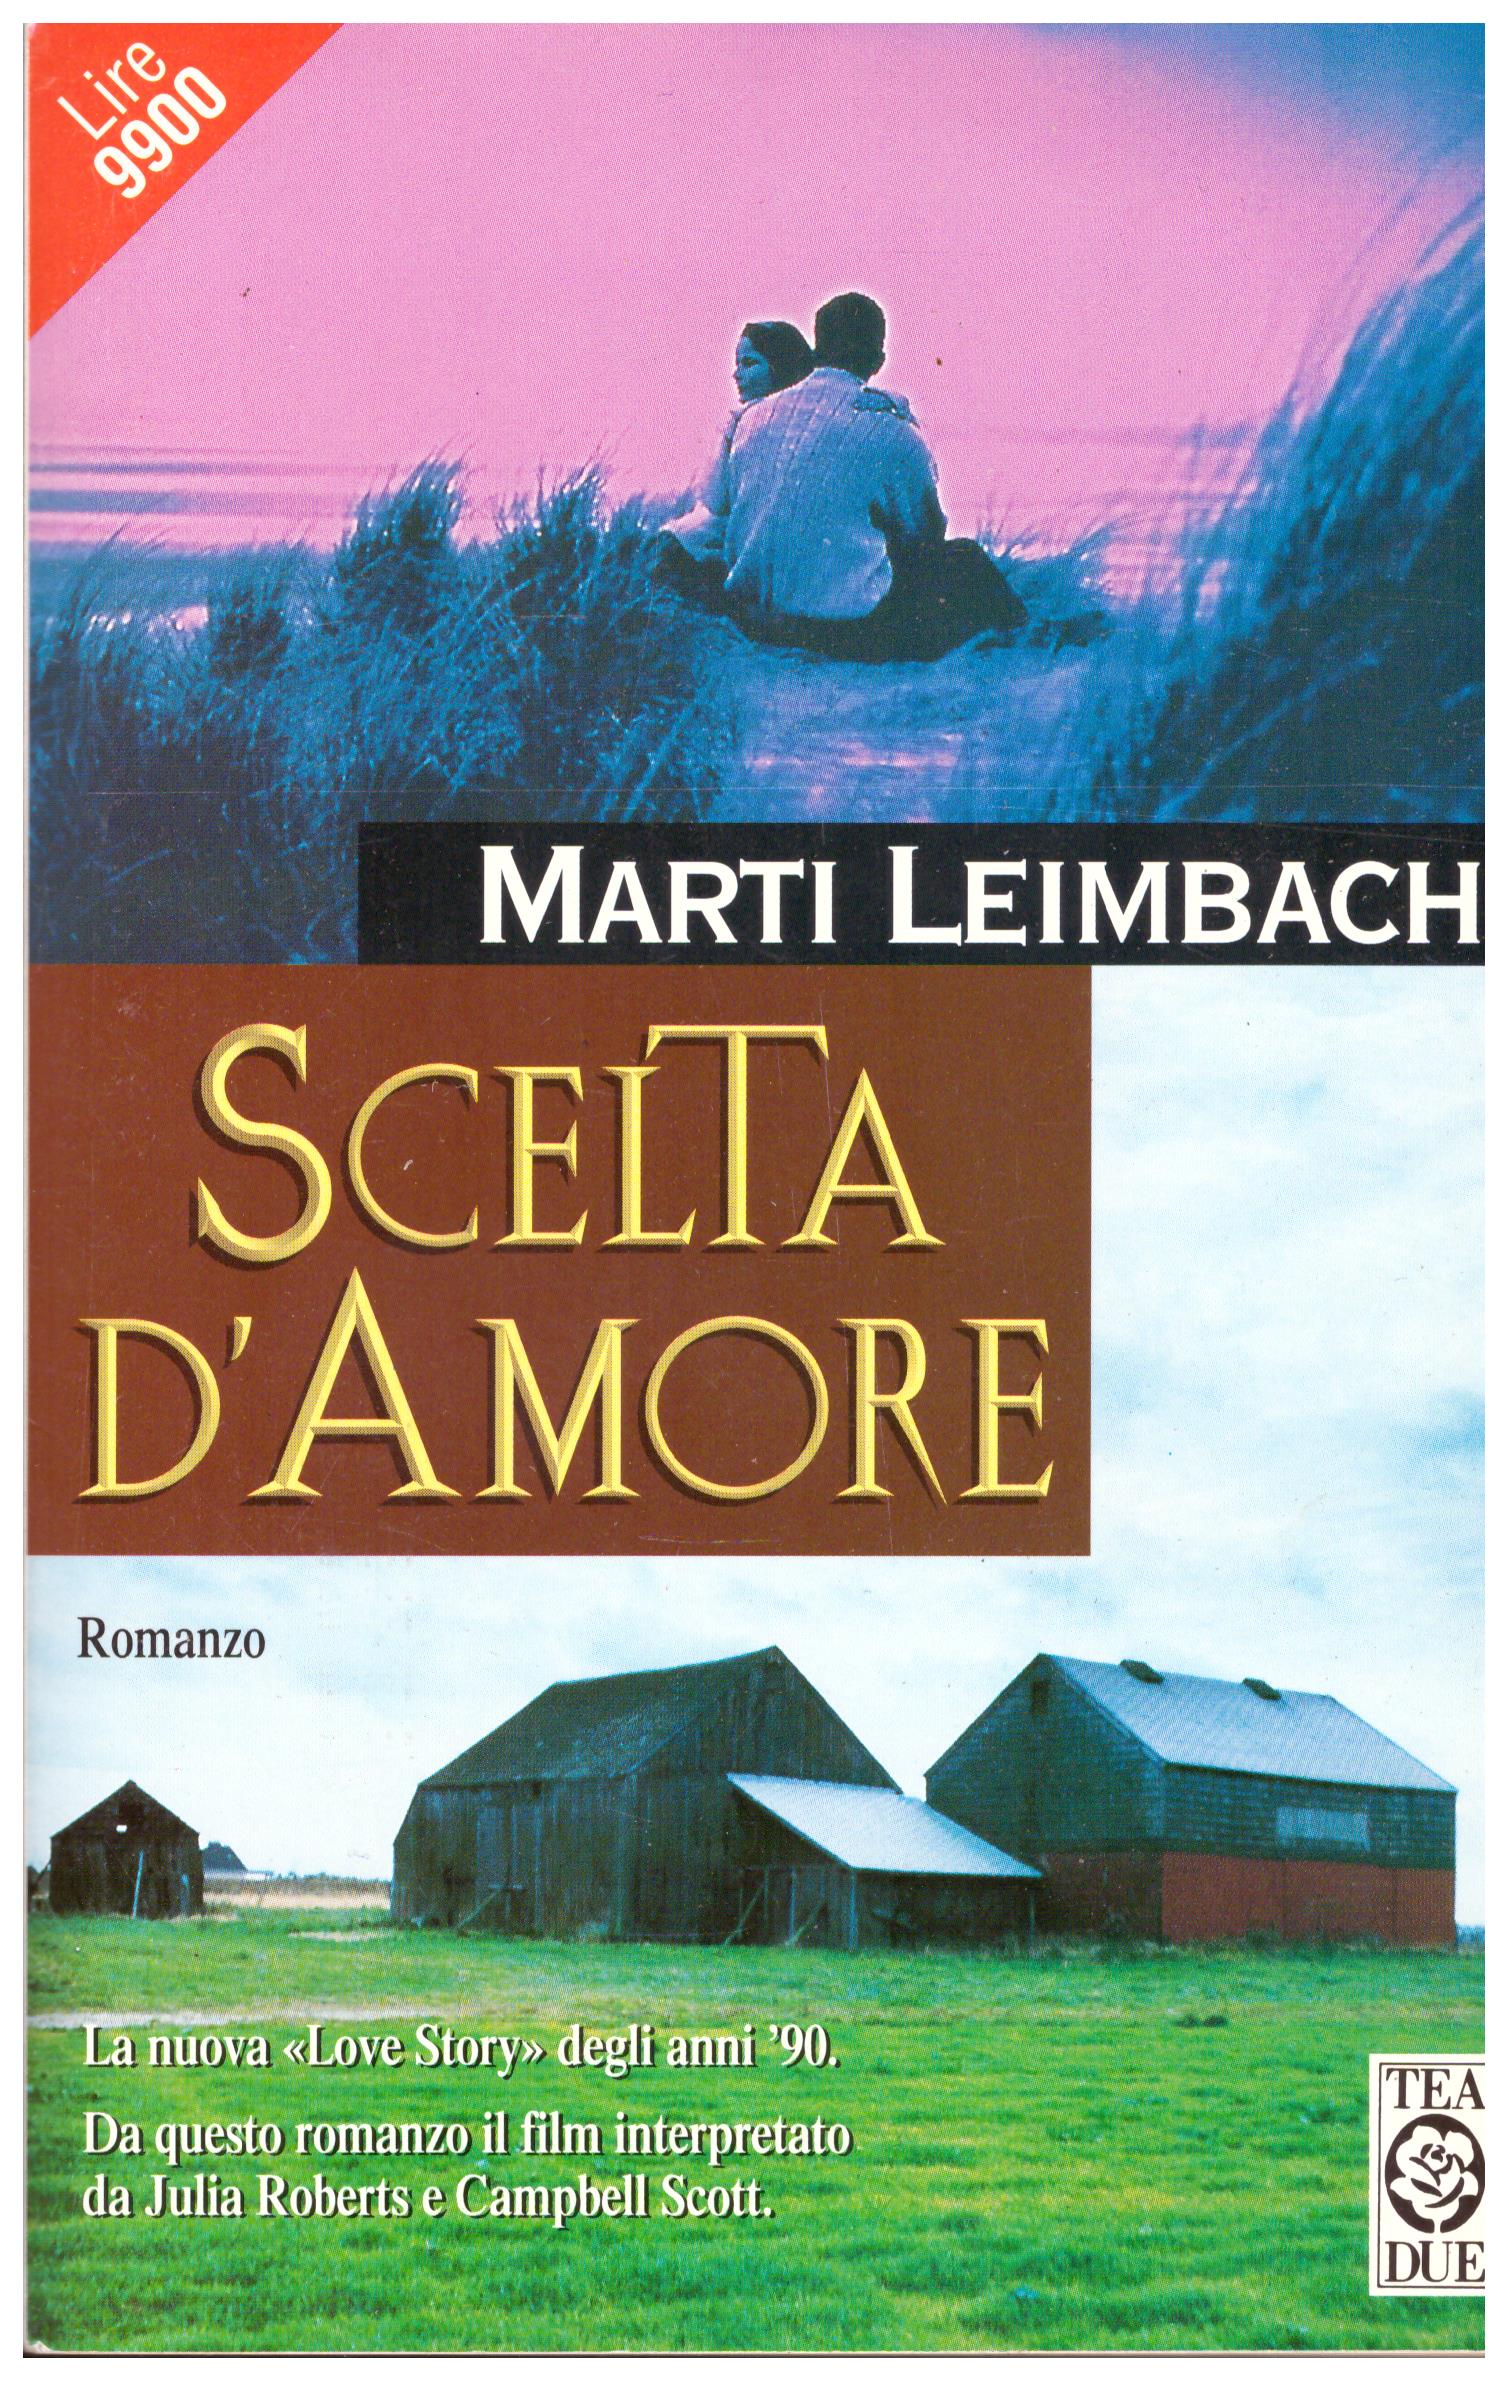 Titolo: Scelta d'amore Autore: Marti Leimbach Editore: TEA DUE